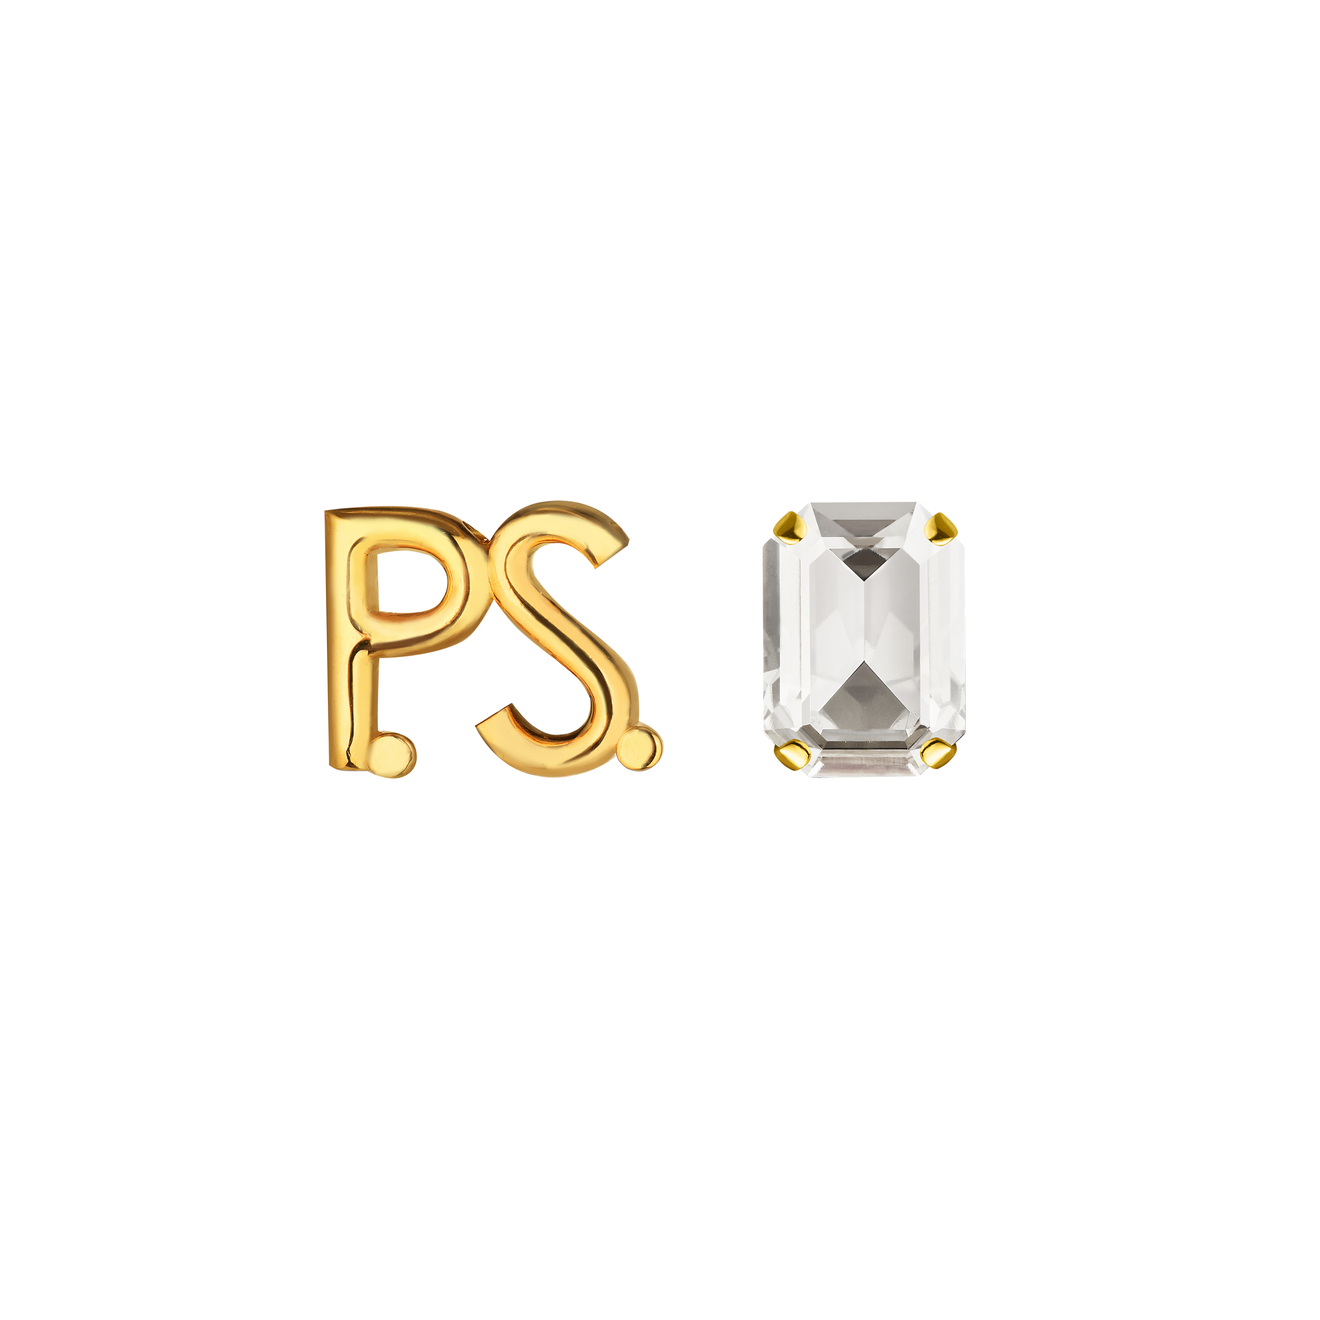 Phenomenal Studio Позолоченные серьги с фирменным логотипом и крупным кристаллом P.S. Crystal Gold phenomenal studio позолоченные серьги с фирменным названием phenomenal gold